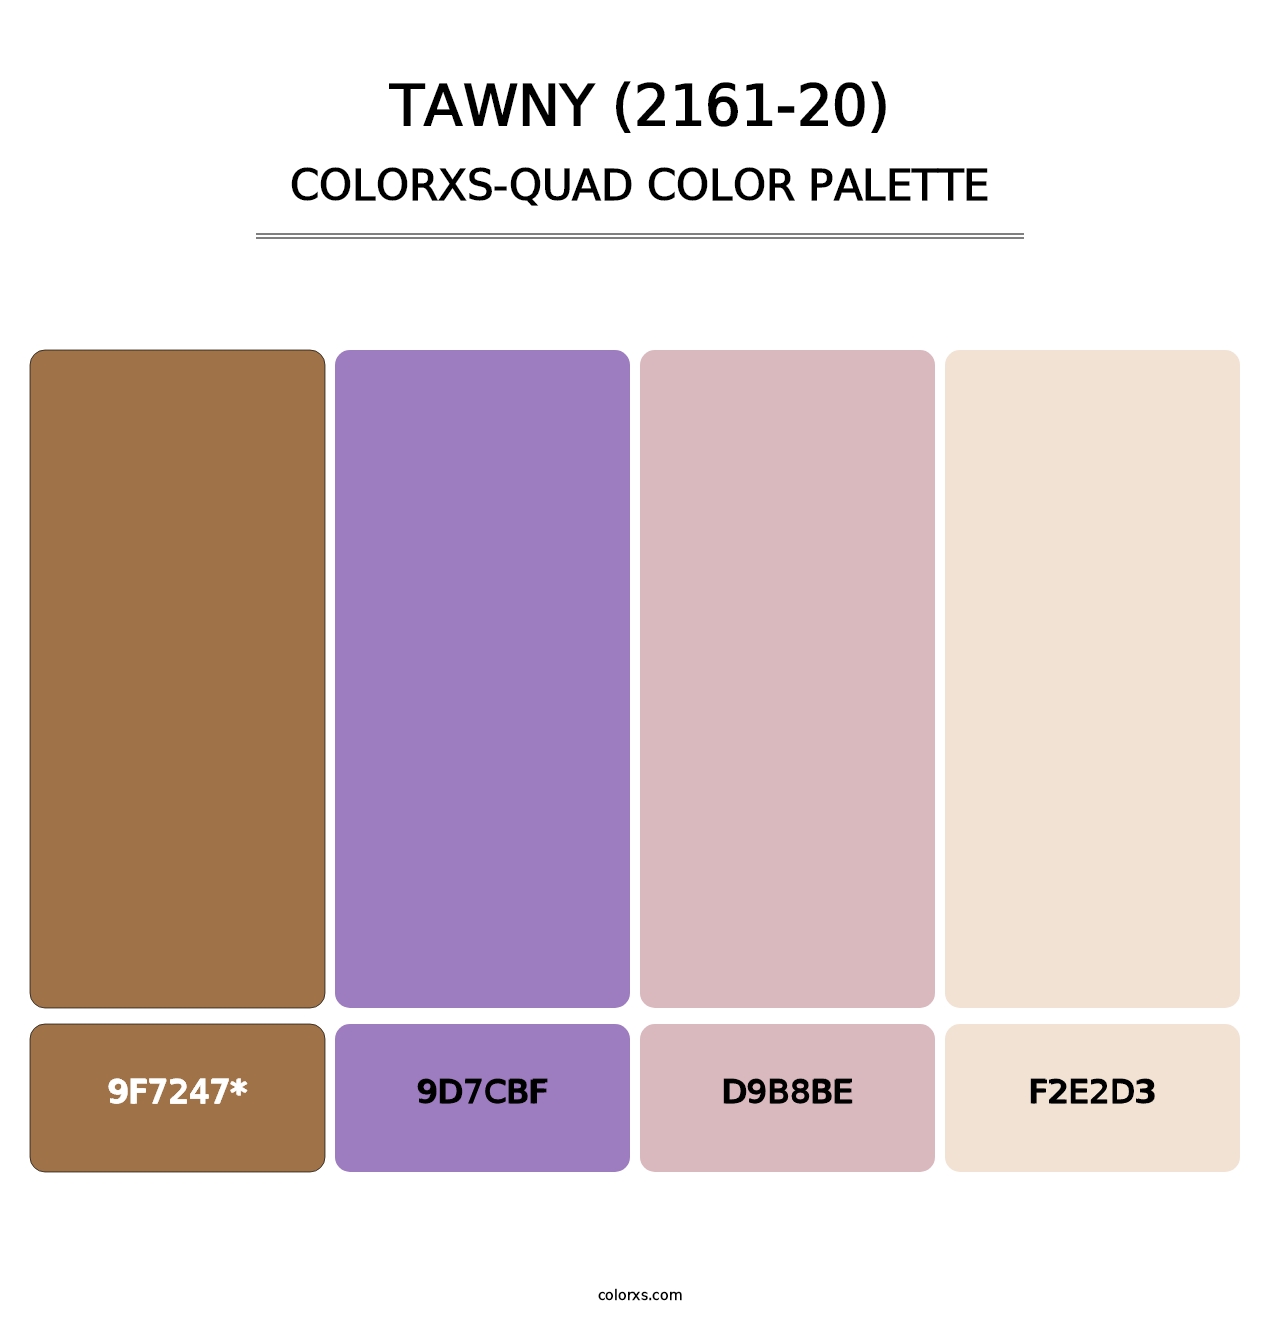 Tawny (2161-20) - Colorxs Quad Palette